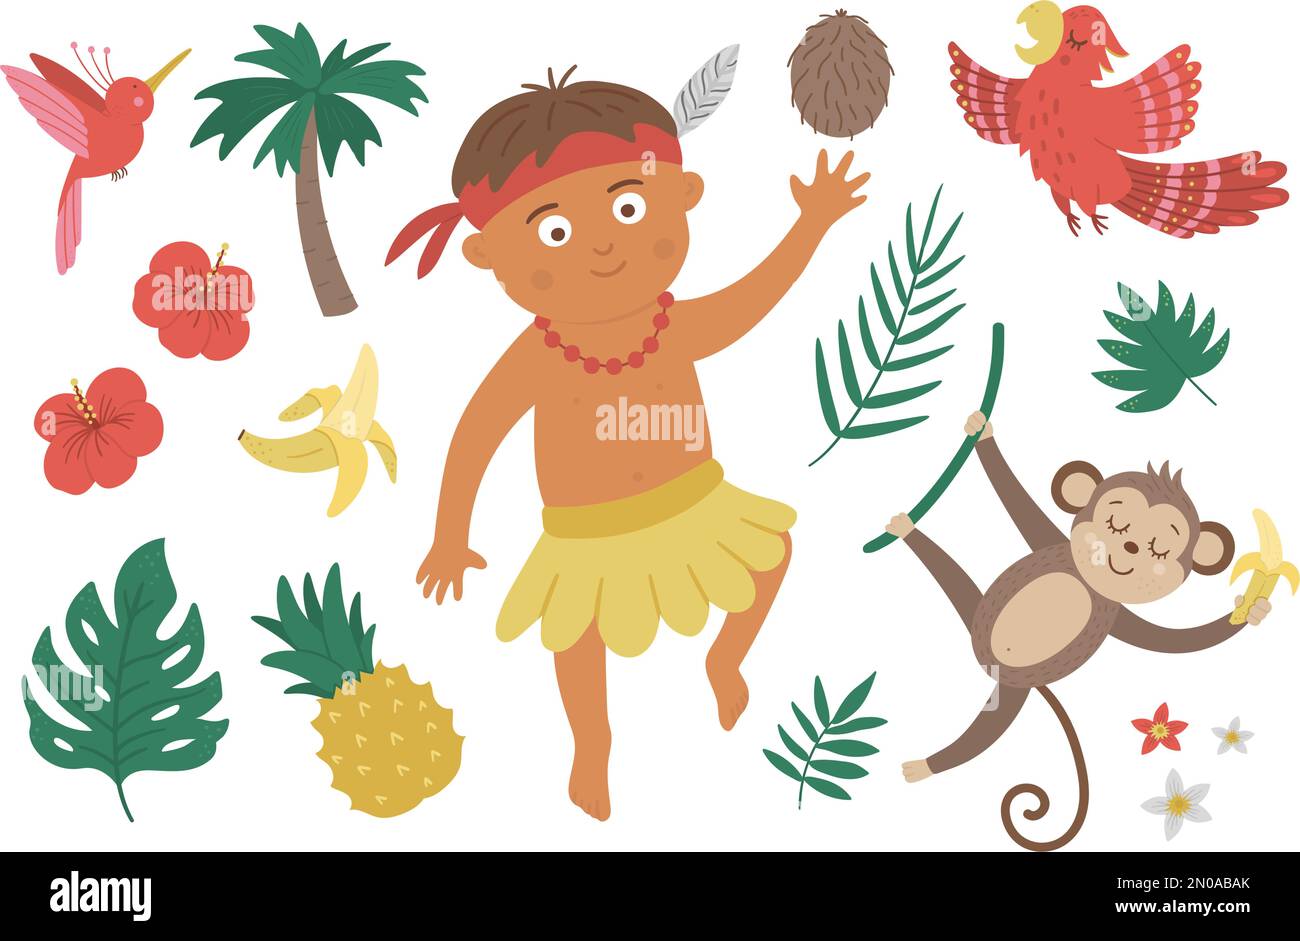 Vecteur plat africain ou papuan garçon avec des oiseaux, des fleurs, des fruits, le singe. Ensemble d'éléments tropicaux, de jungle et exotiques. Collection d'art estival drôle Illustration de Vecteur